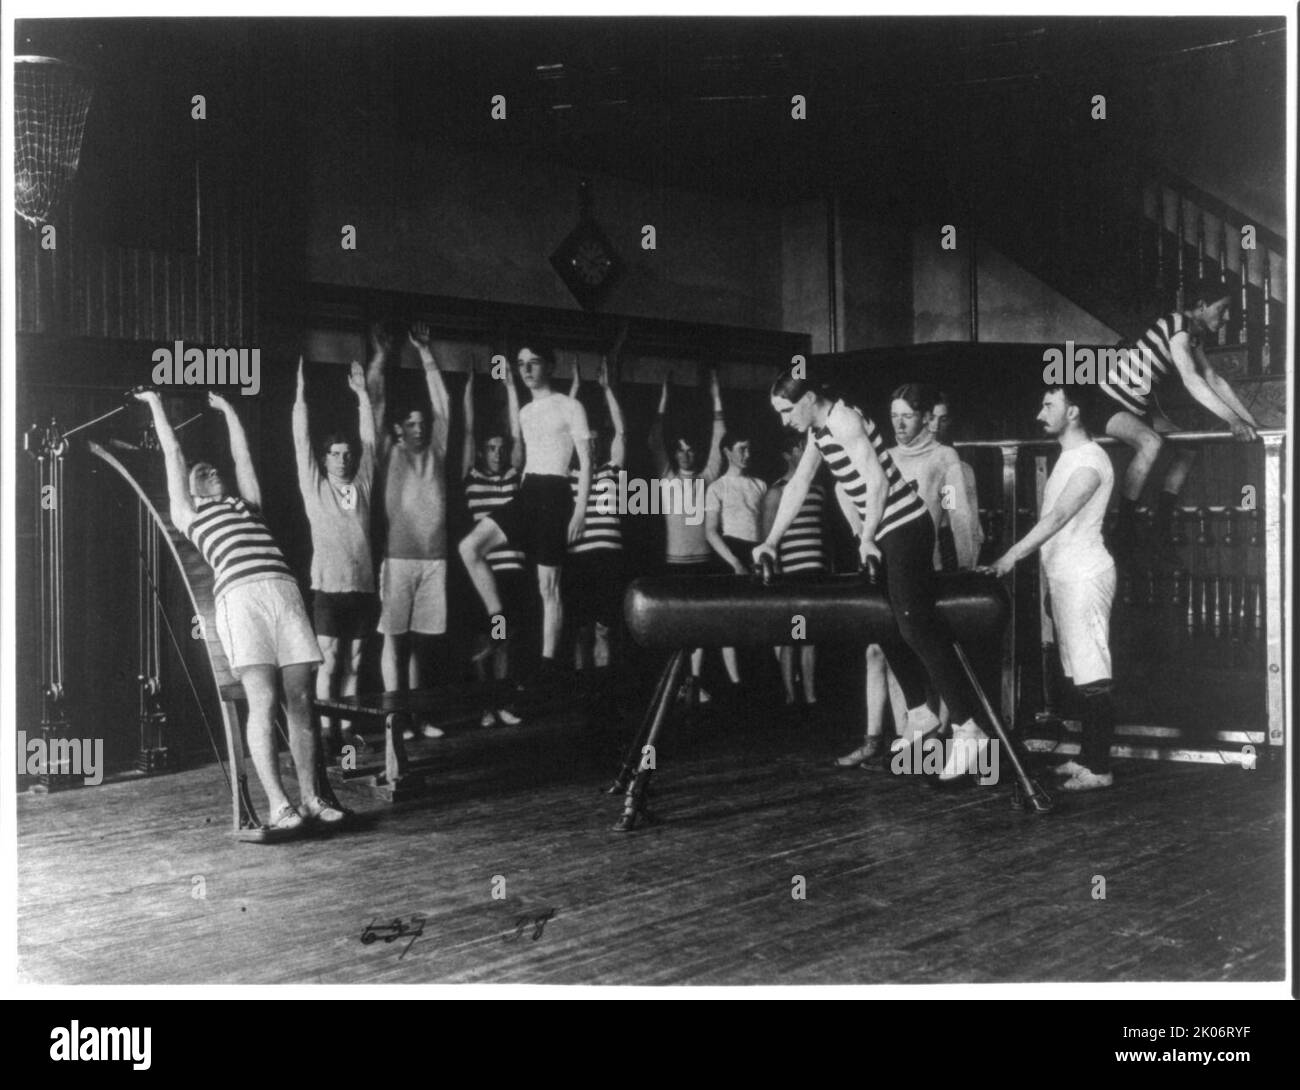 Des élèves de sexe masculin s'exerçant, certains avec de l'équipement, Western High School, Washington, D.C., (1899?). Banque D'Images